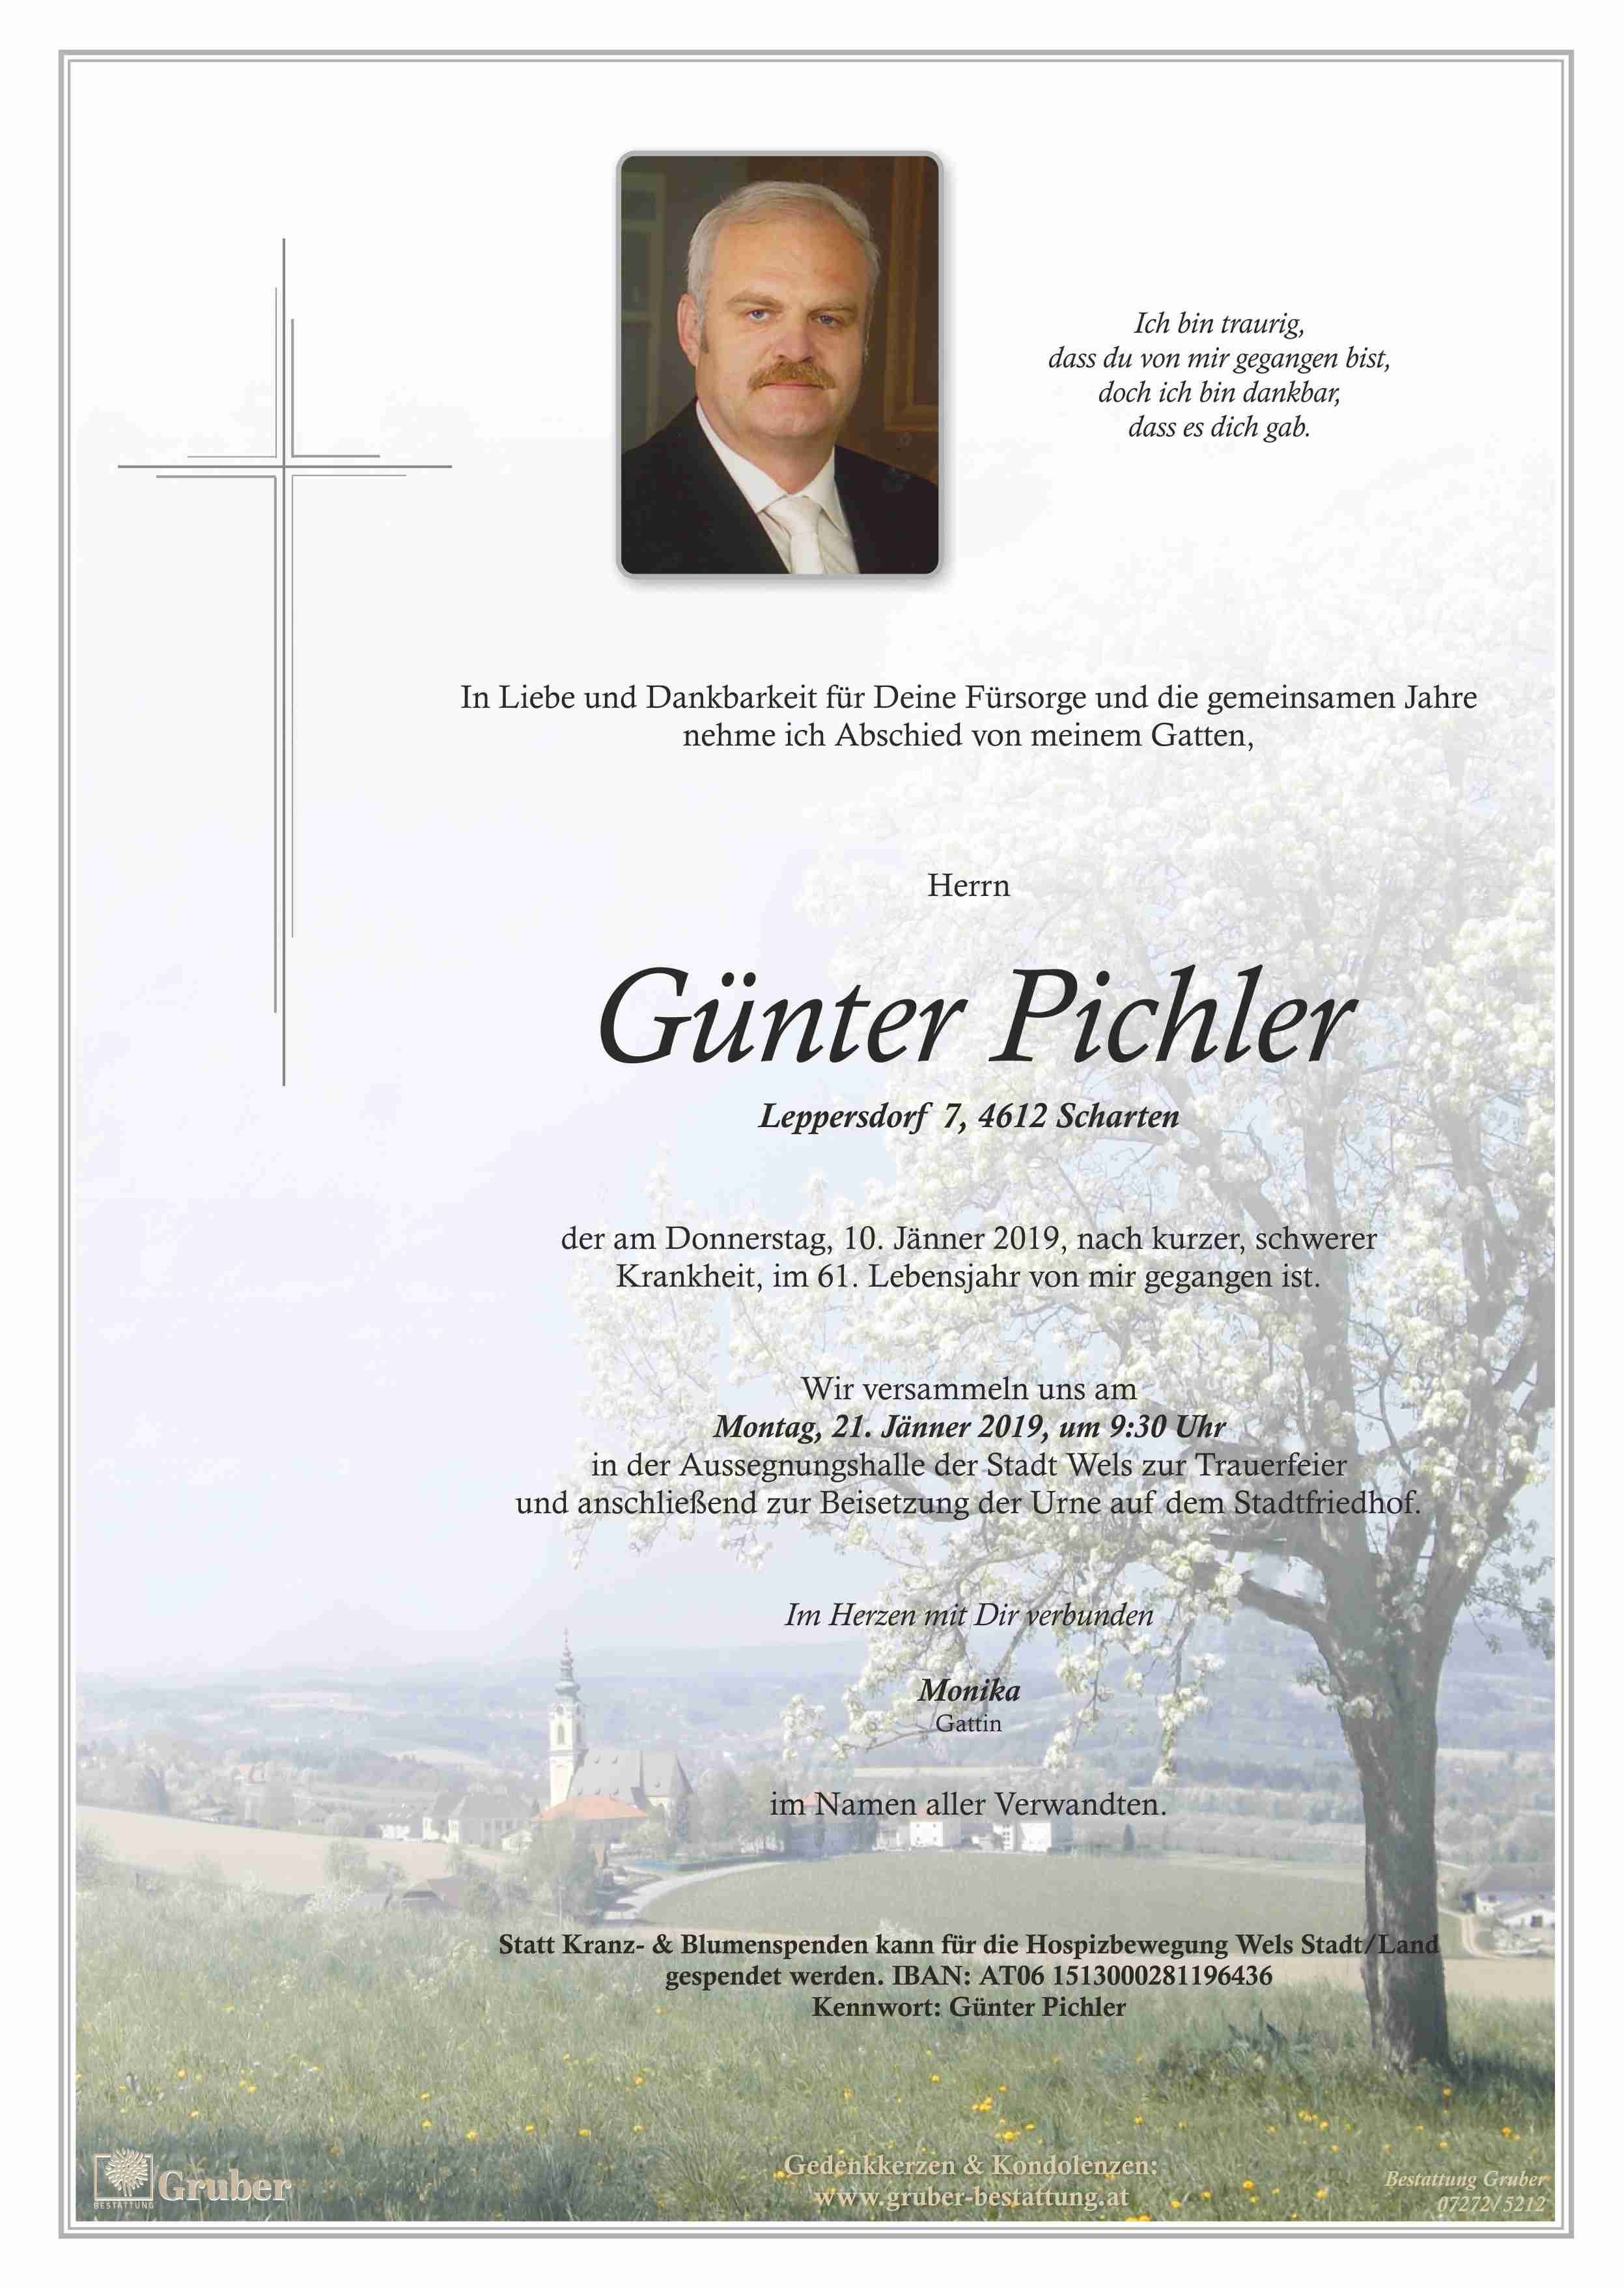 Günther Pichler (Wels)